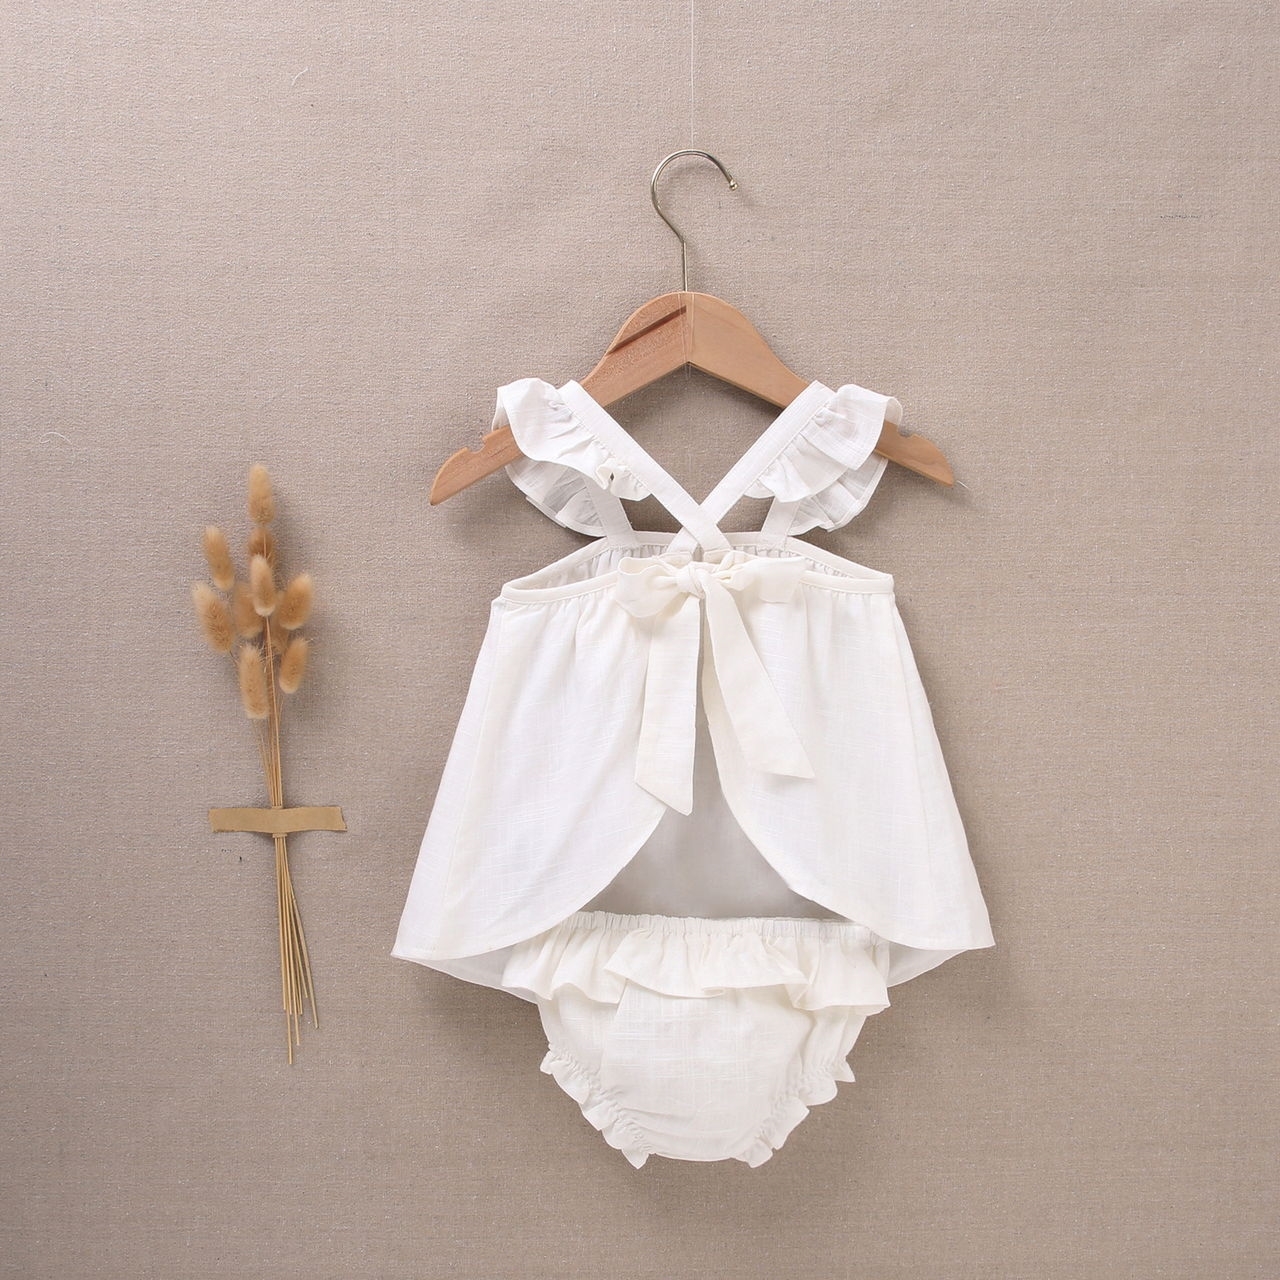 Imagen de Vestido de bebé niña con cubrepañal blanco jesusito